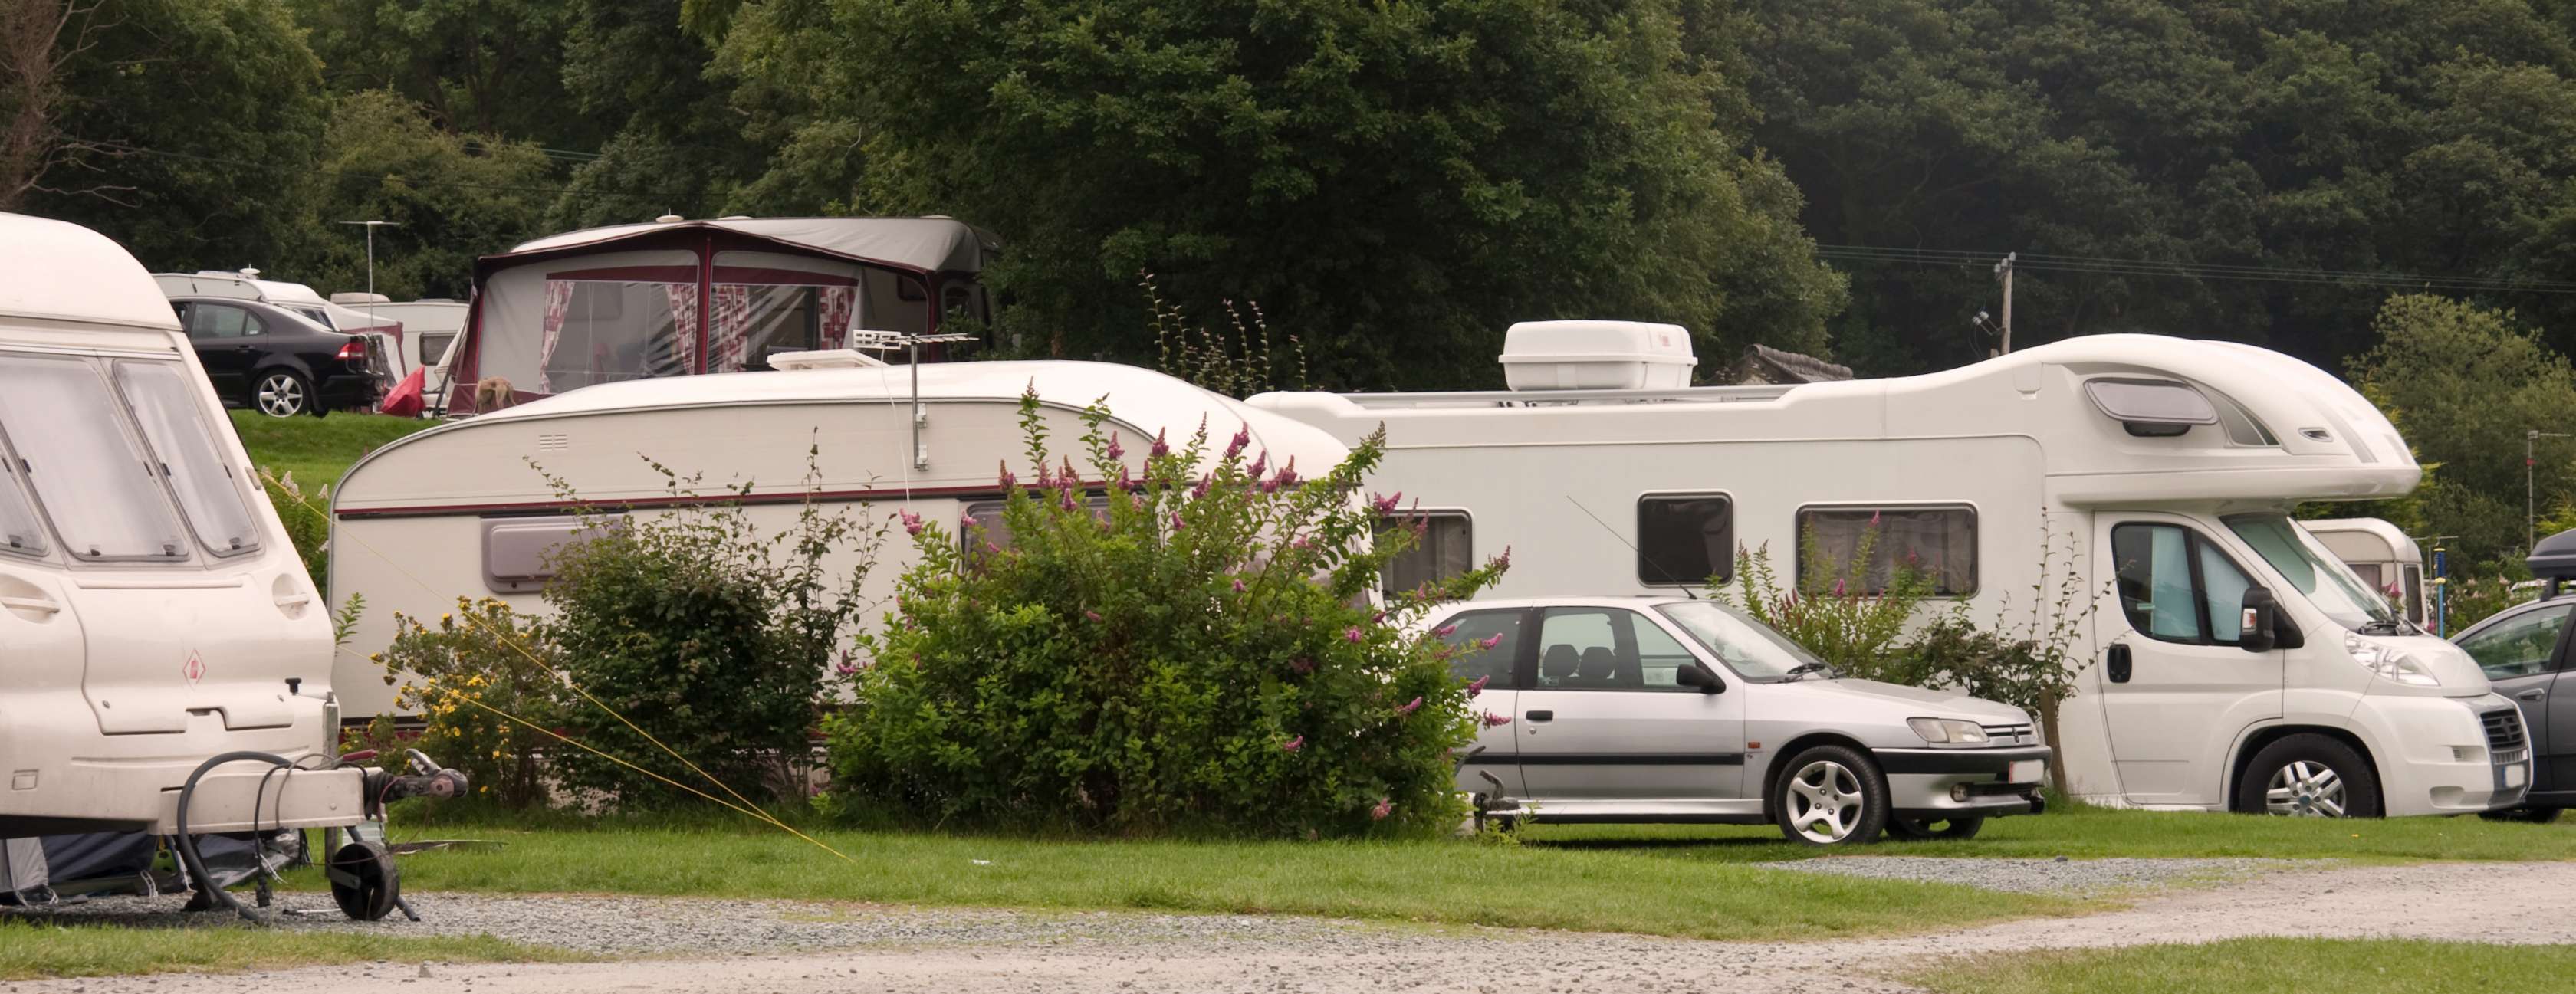 Wohnmobil Sicherheit: Camper vor Diebstahl schützen